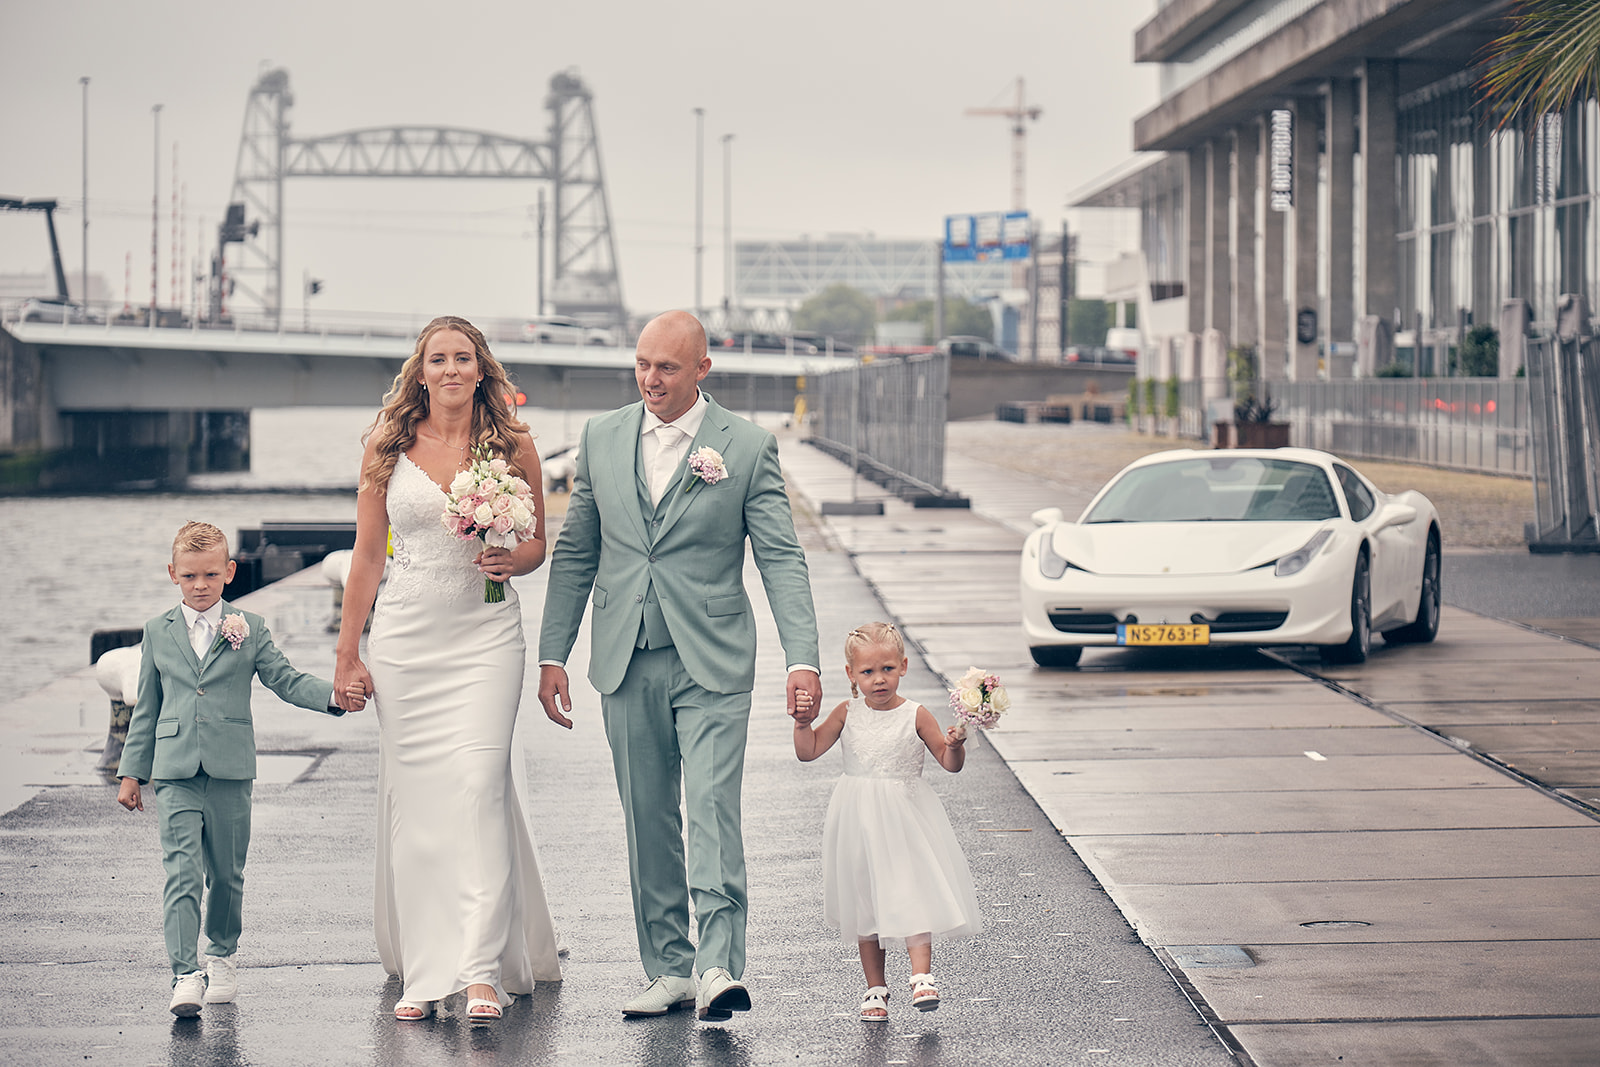 Trouwfotograaf Kasteel Hooge Vuursche in Baarn - De bruidsfotografie van Dennis en Kim - Kop van Zuid Rotterdam